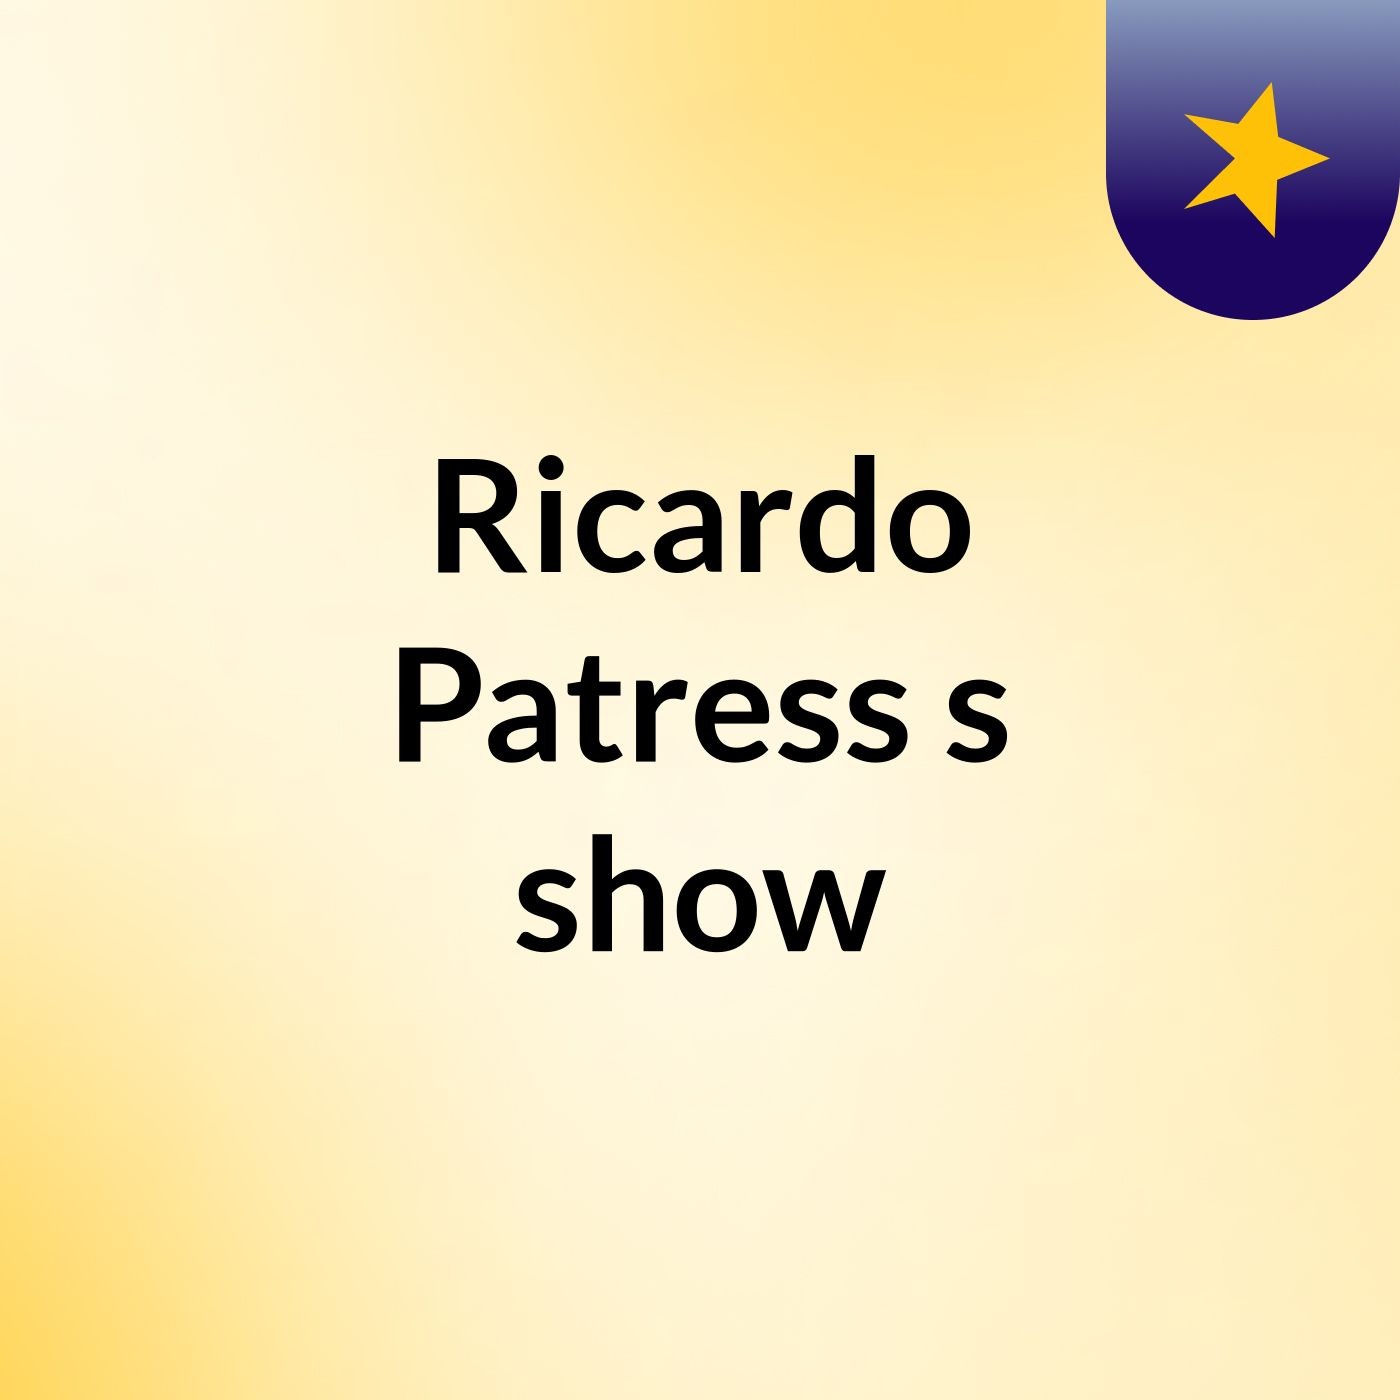 Ricardo Patress's show